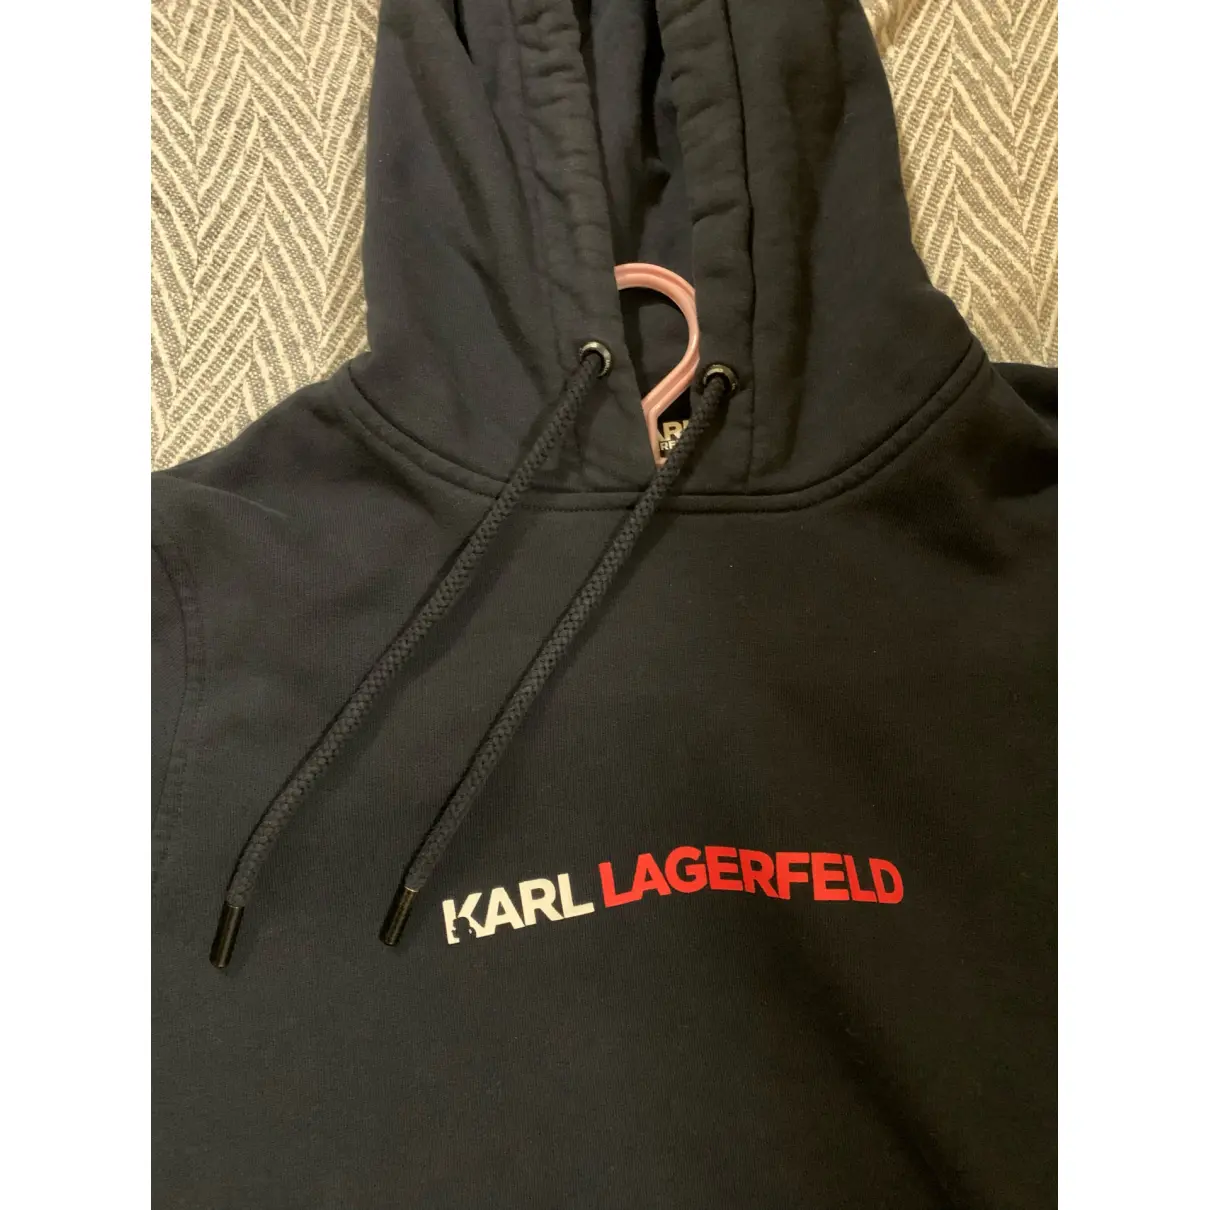 Buy Karl Lagerfeld Sweatshirt online